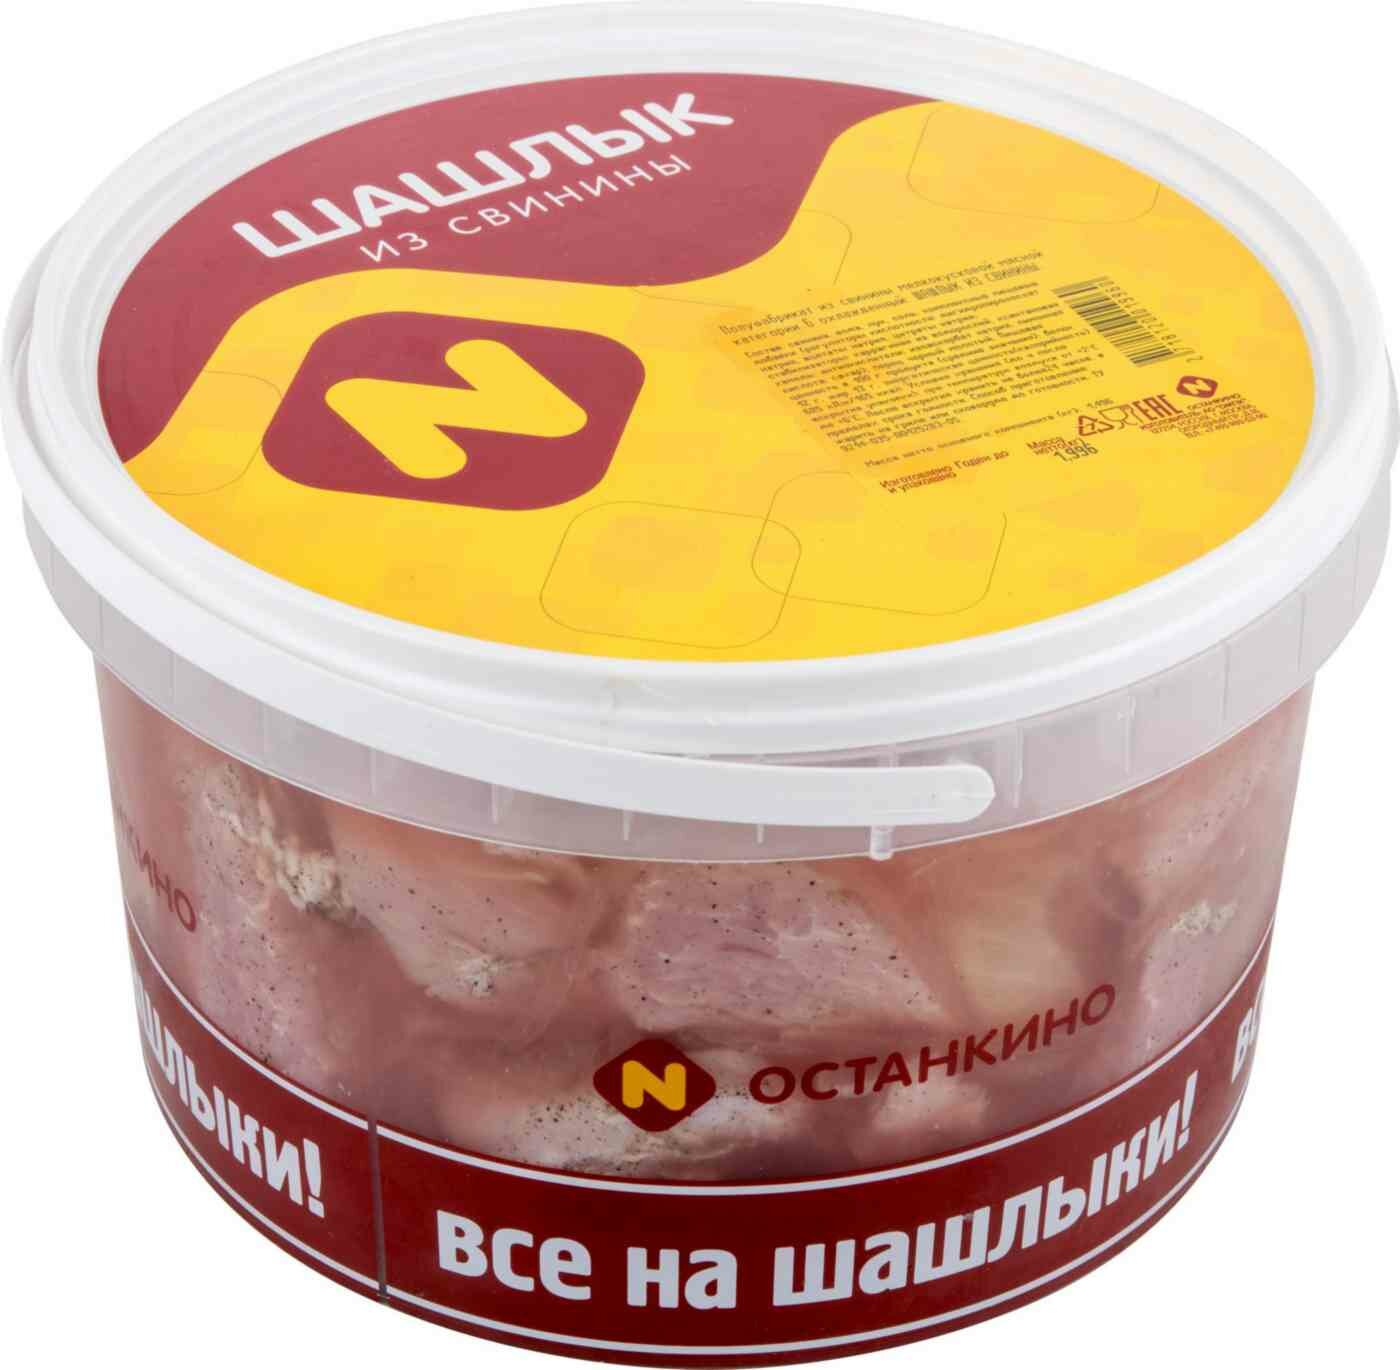 Шашлык из свинины охлаждённый Останкино, 2 кг